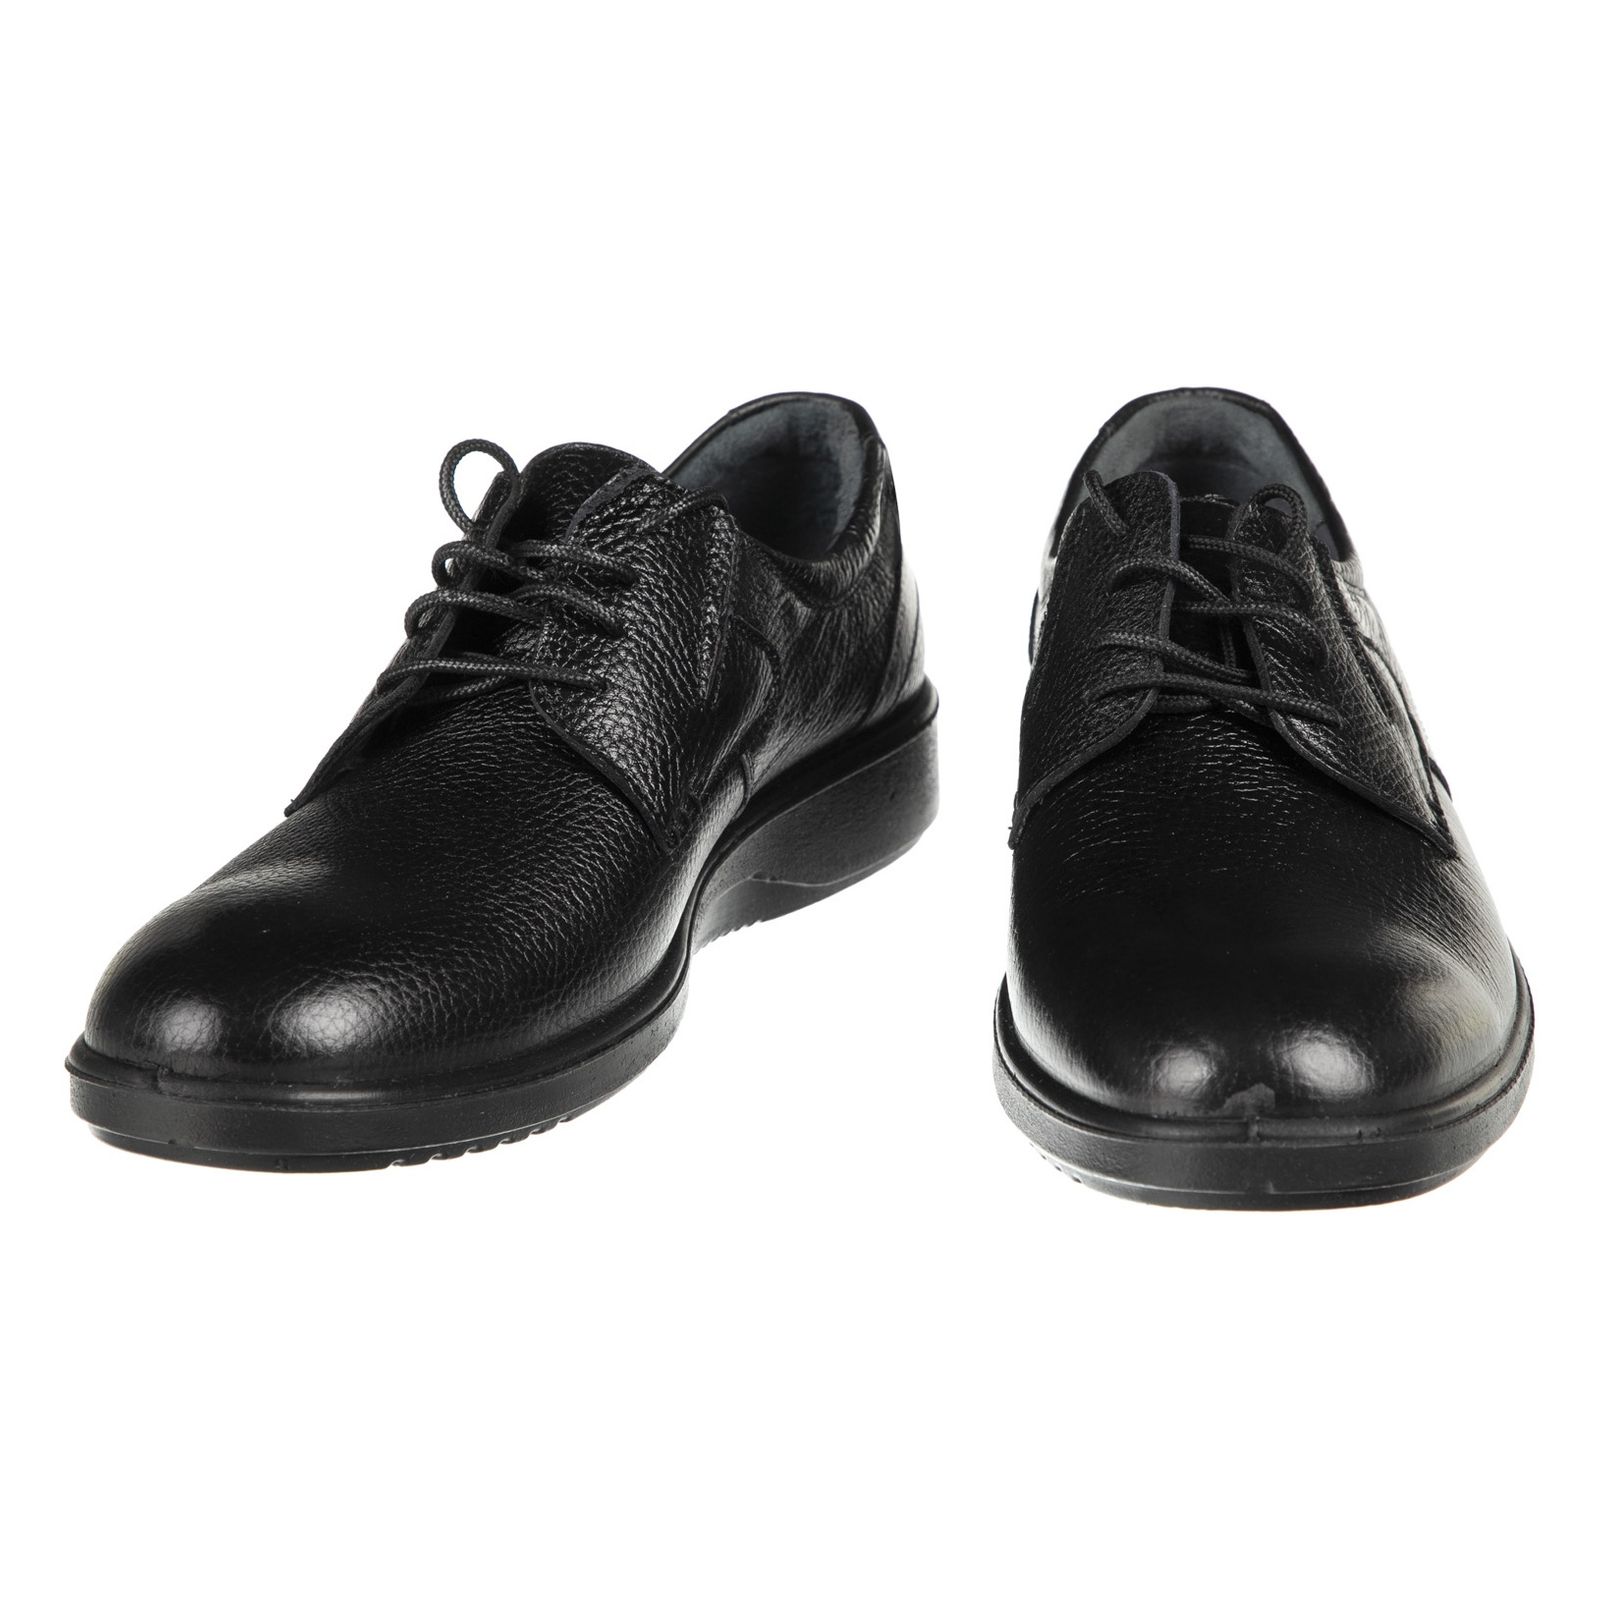 کفش مردانه بلوط مدل 7216B503-101 - مشکی - 5